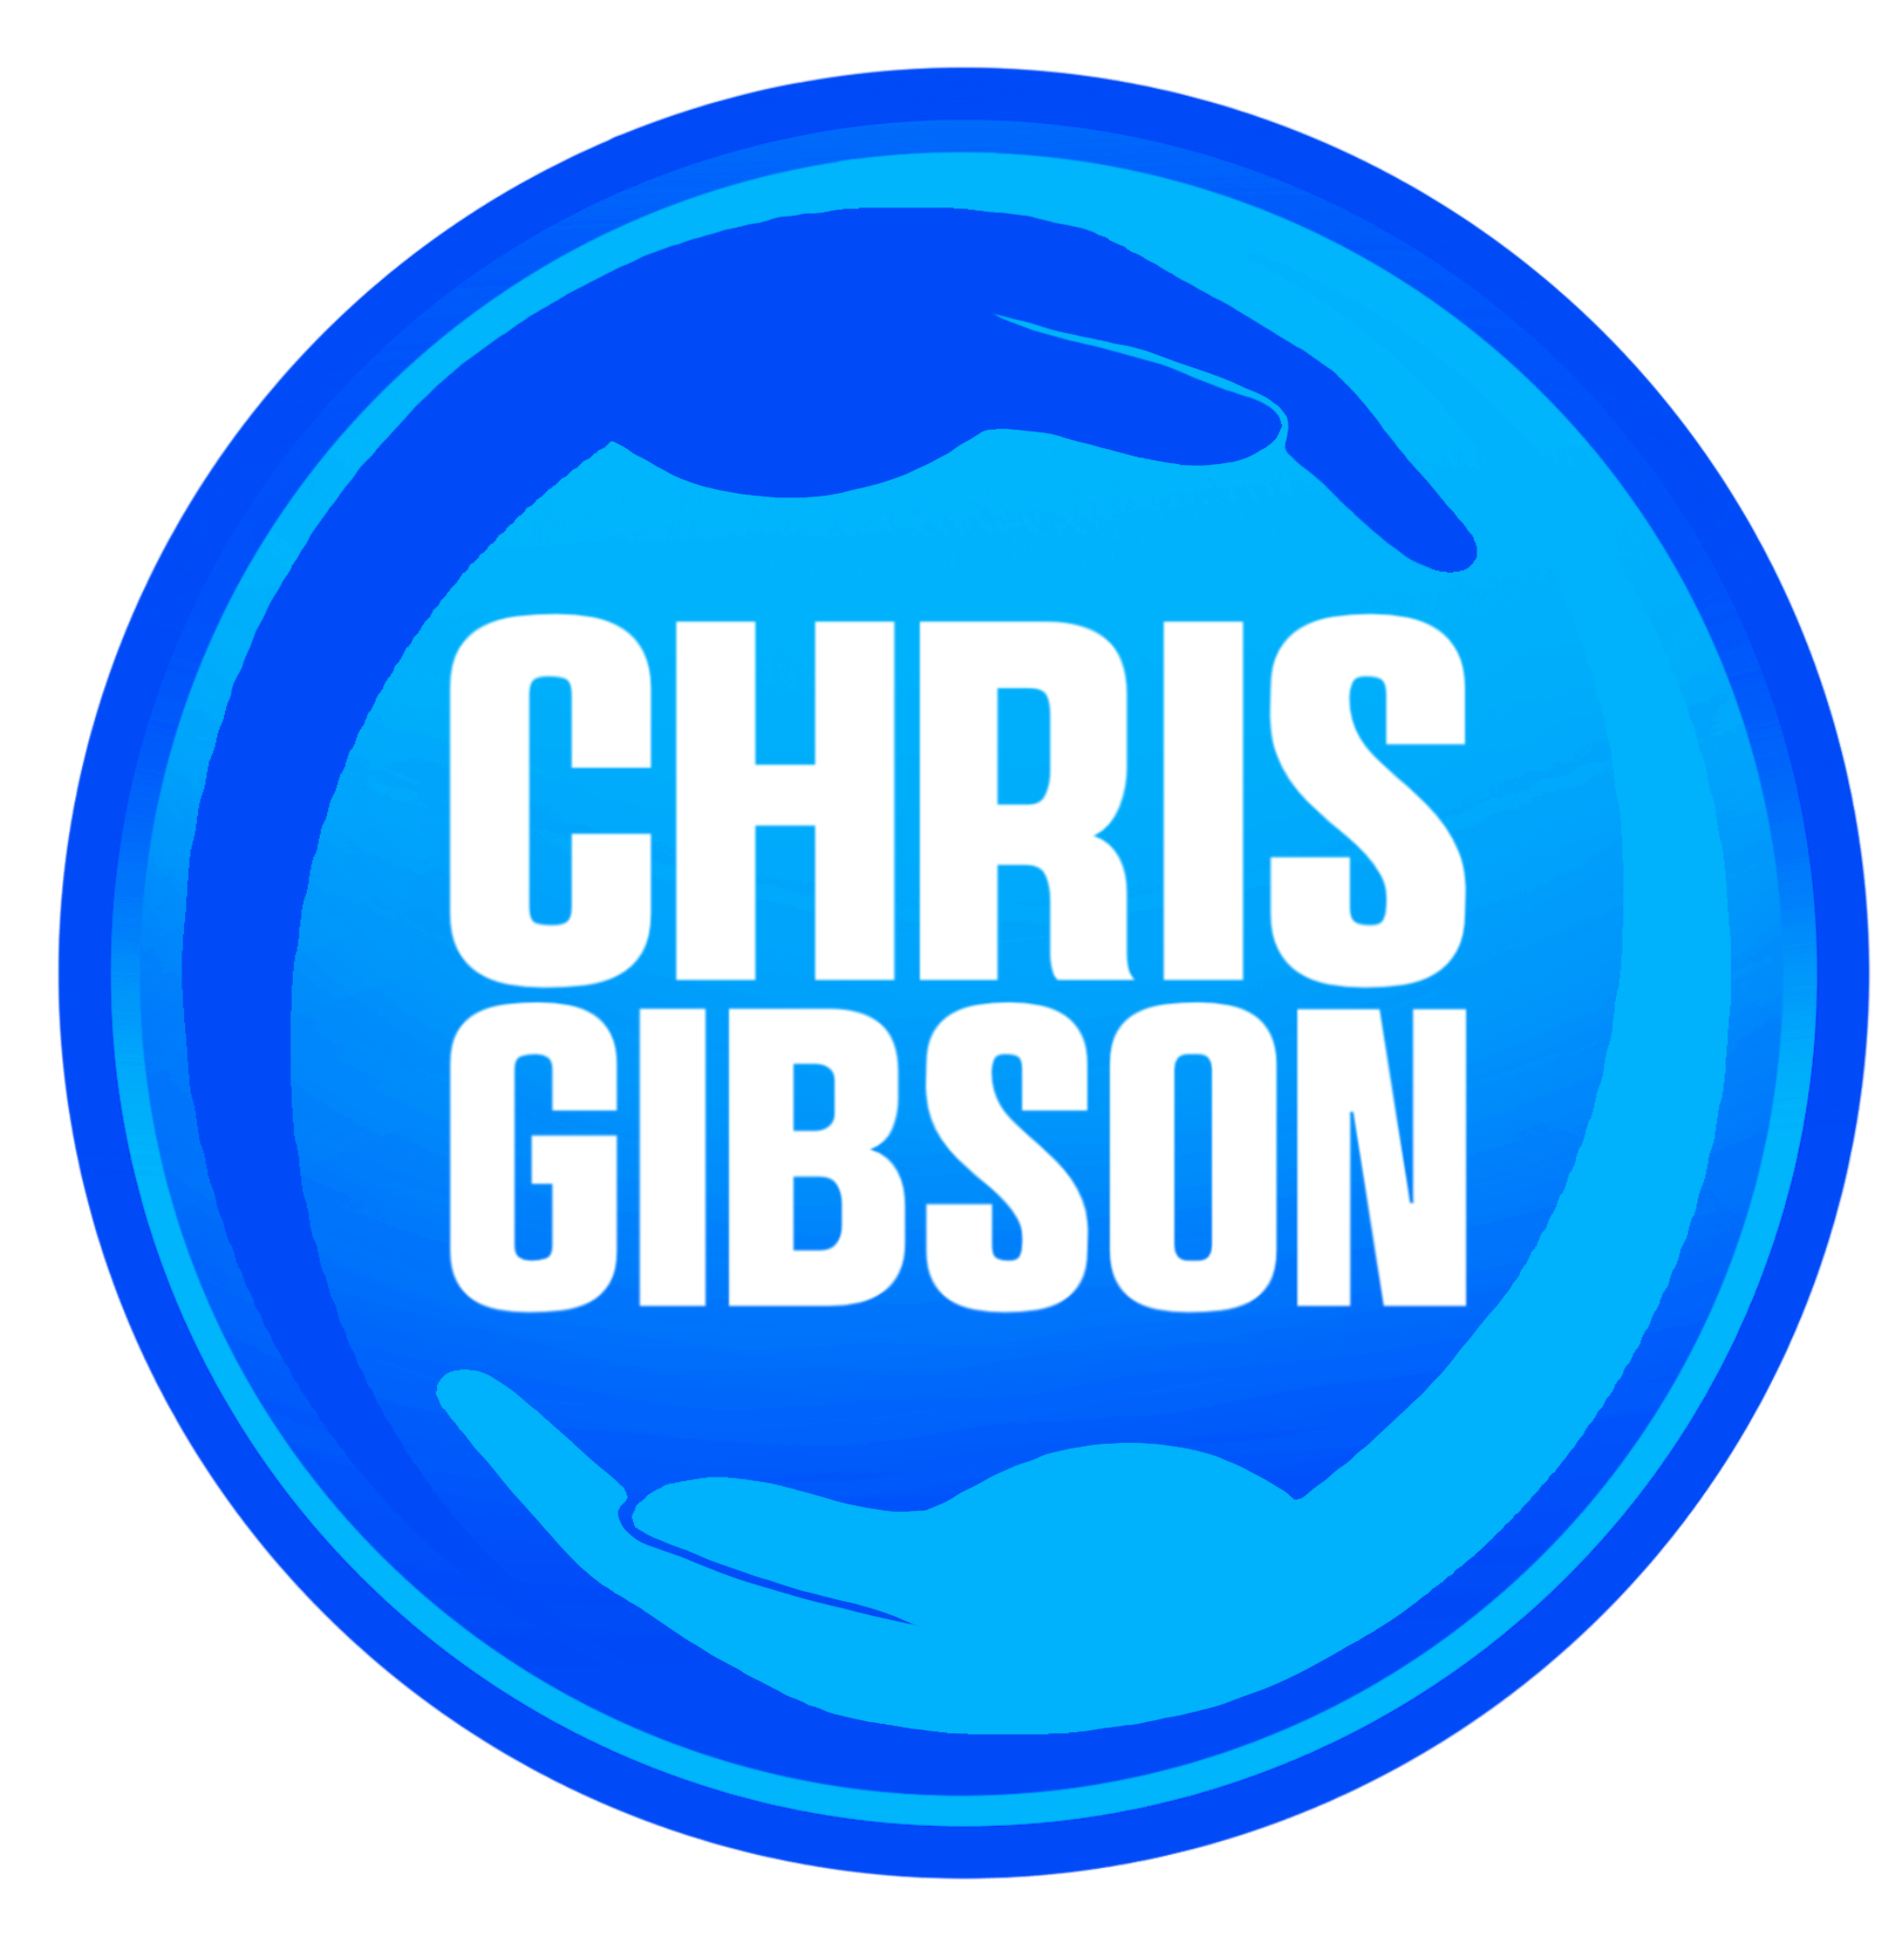 Chris Gibson Live